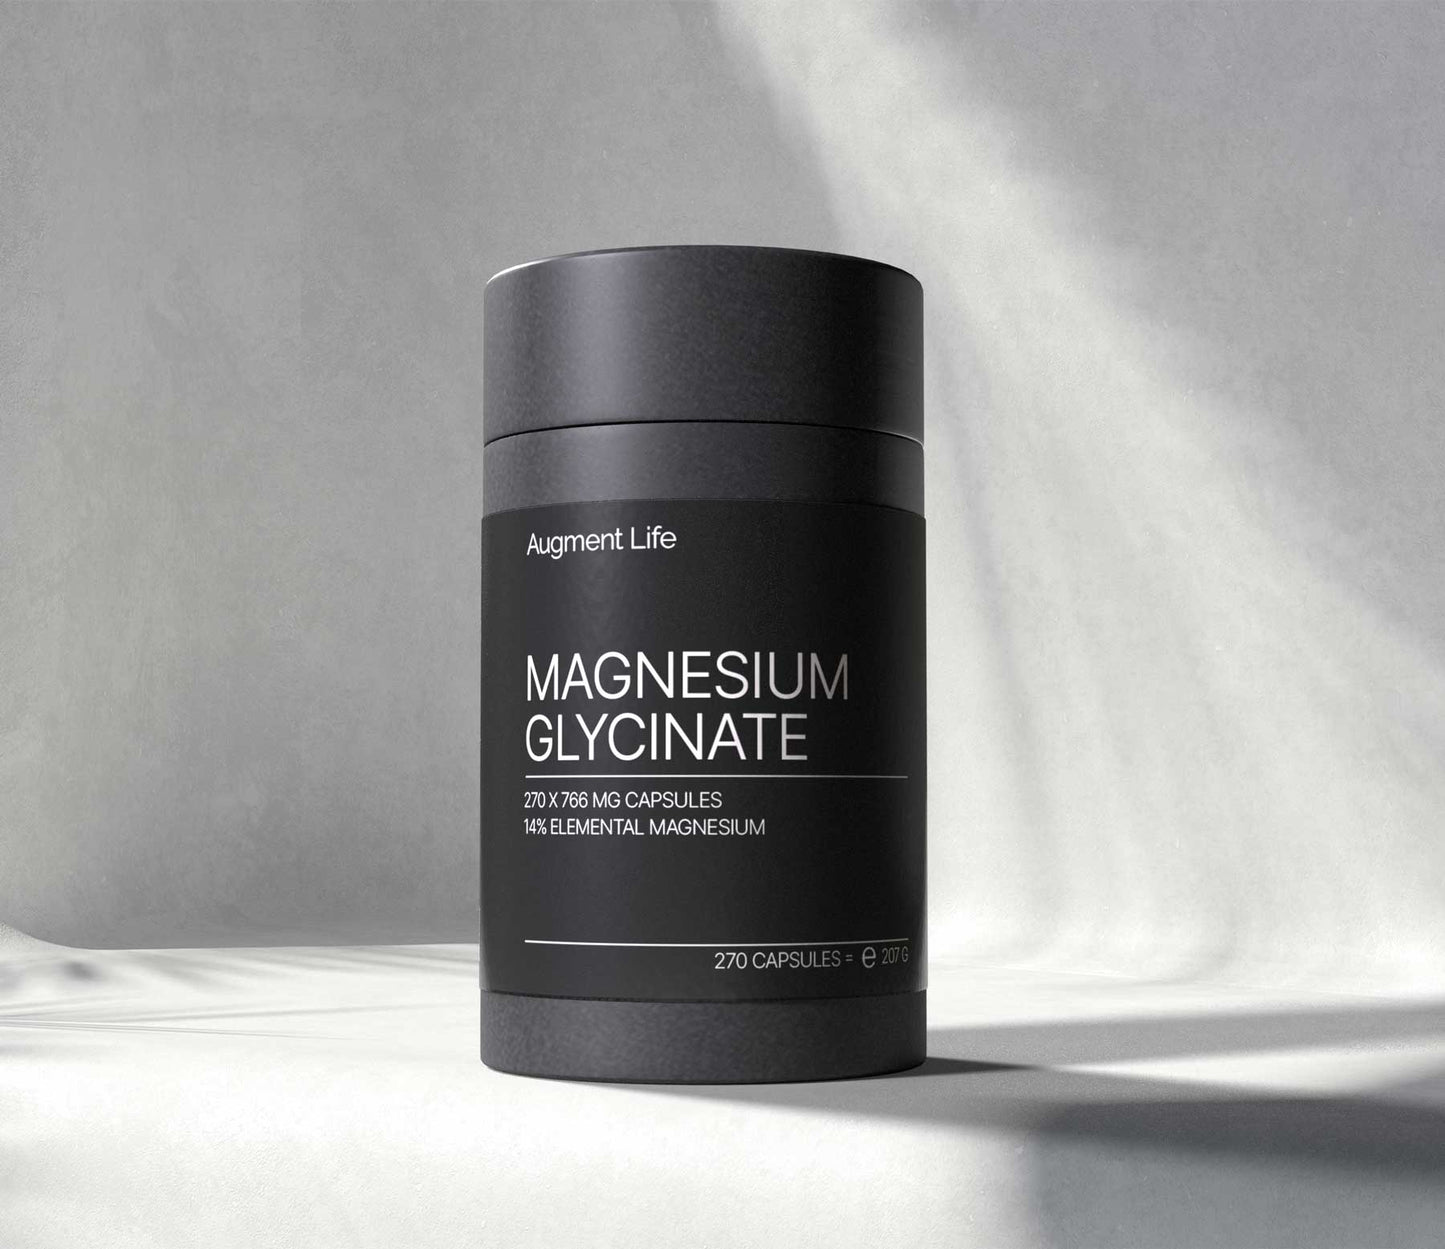 Magnesium Glycinate - 766 mg capsules - 14% elemental magnesium